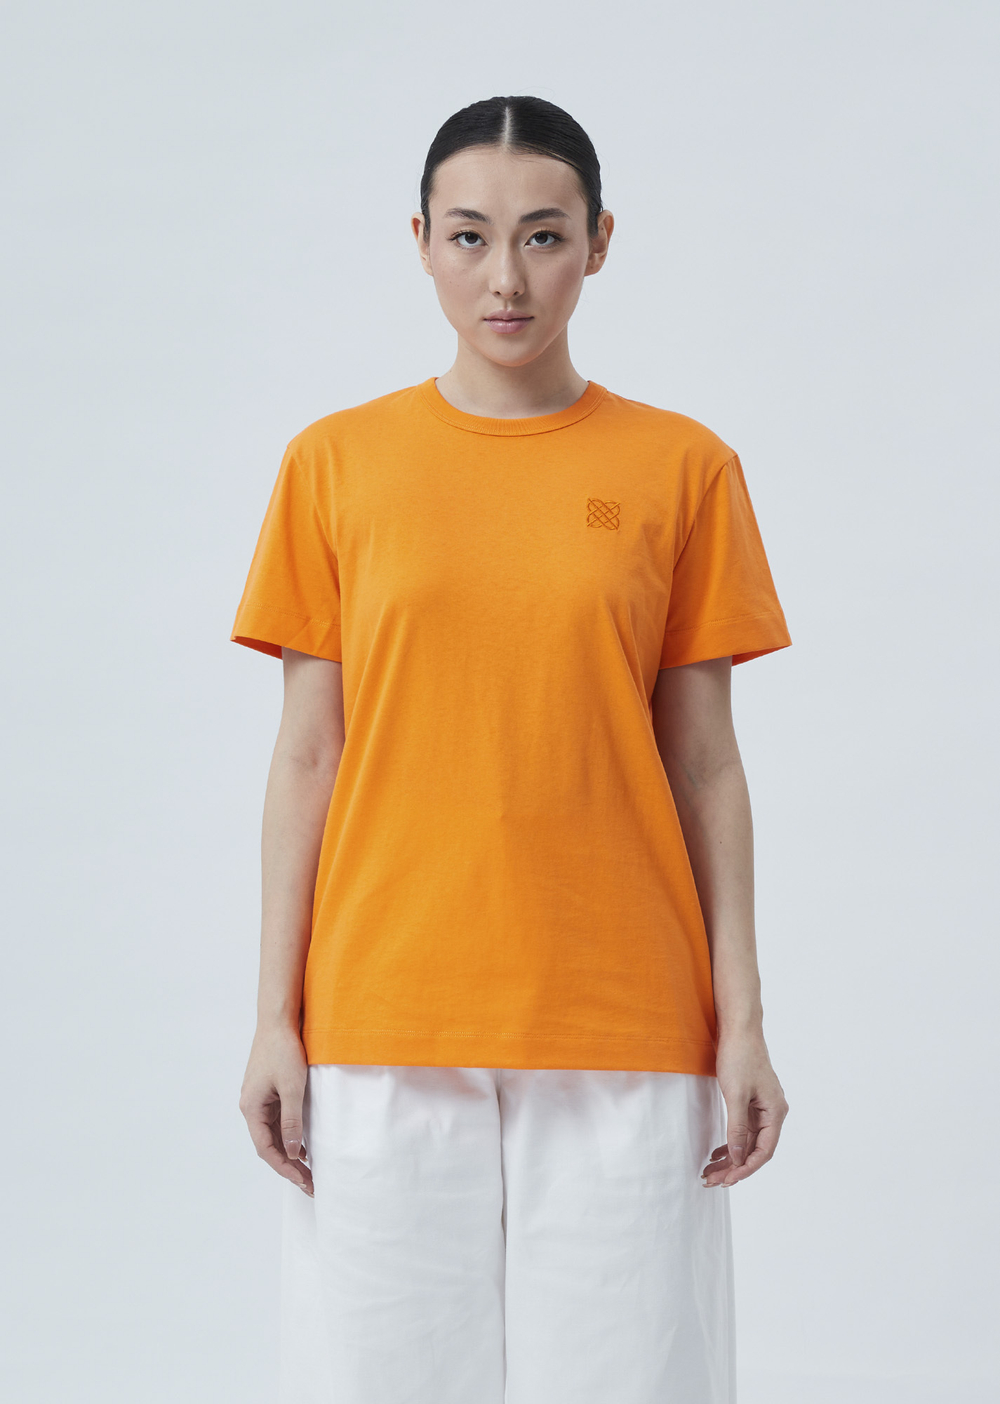 Женская футболка с вышивкой оранжевый р.XL